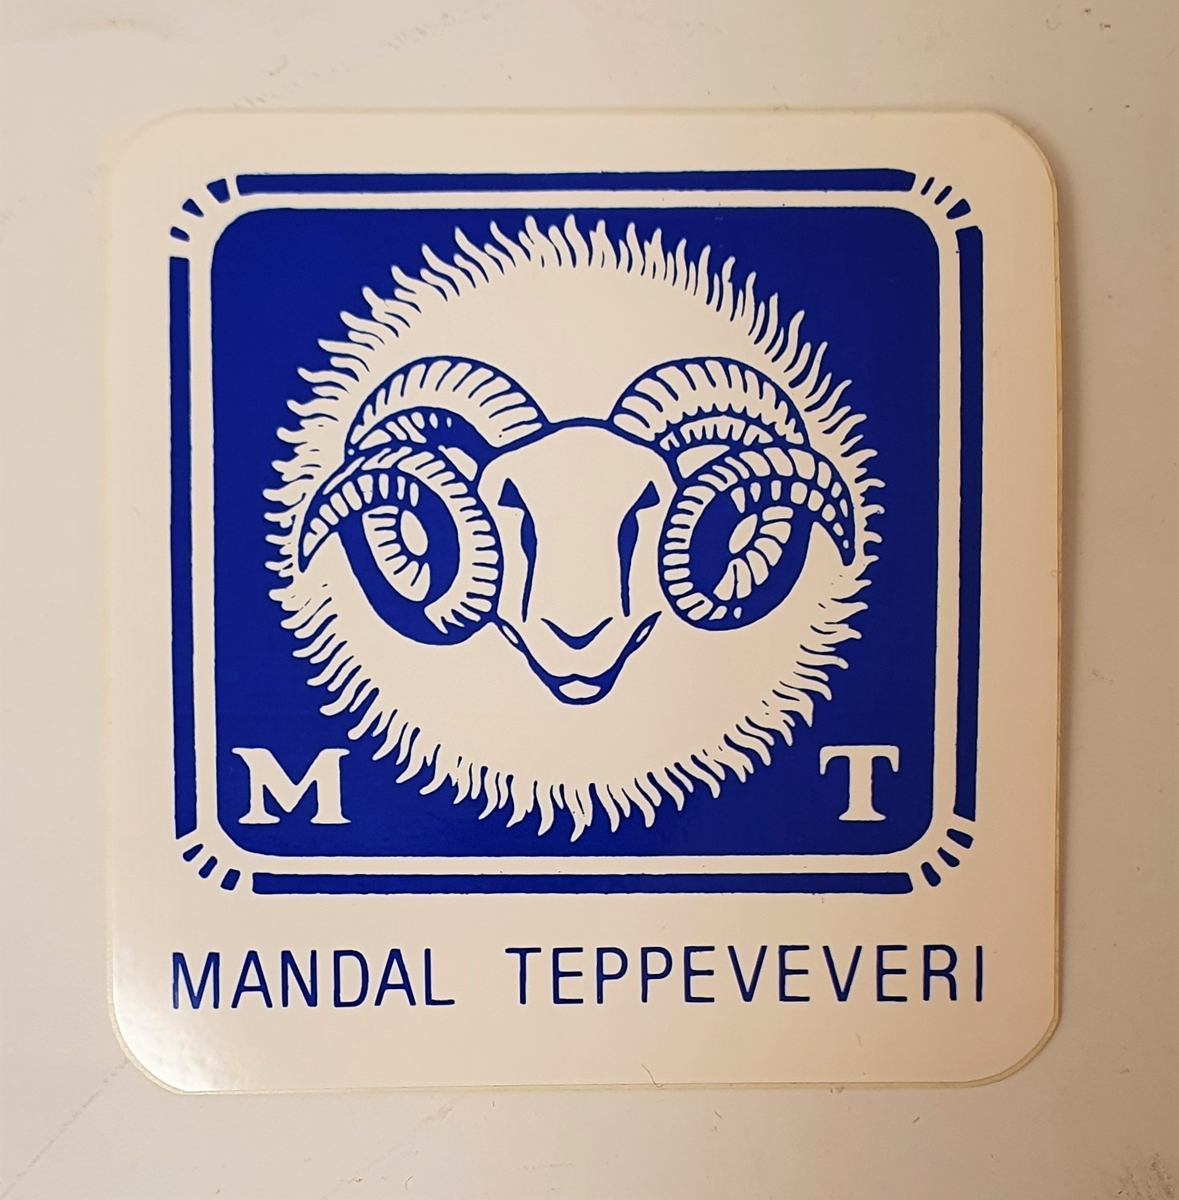 Klistermerke med bedriftsnavn og logo for Mandal Teppeveveri.